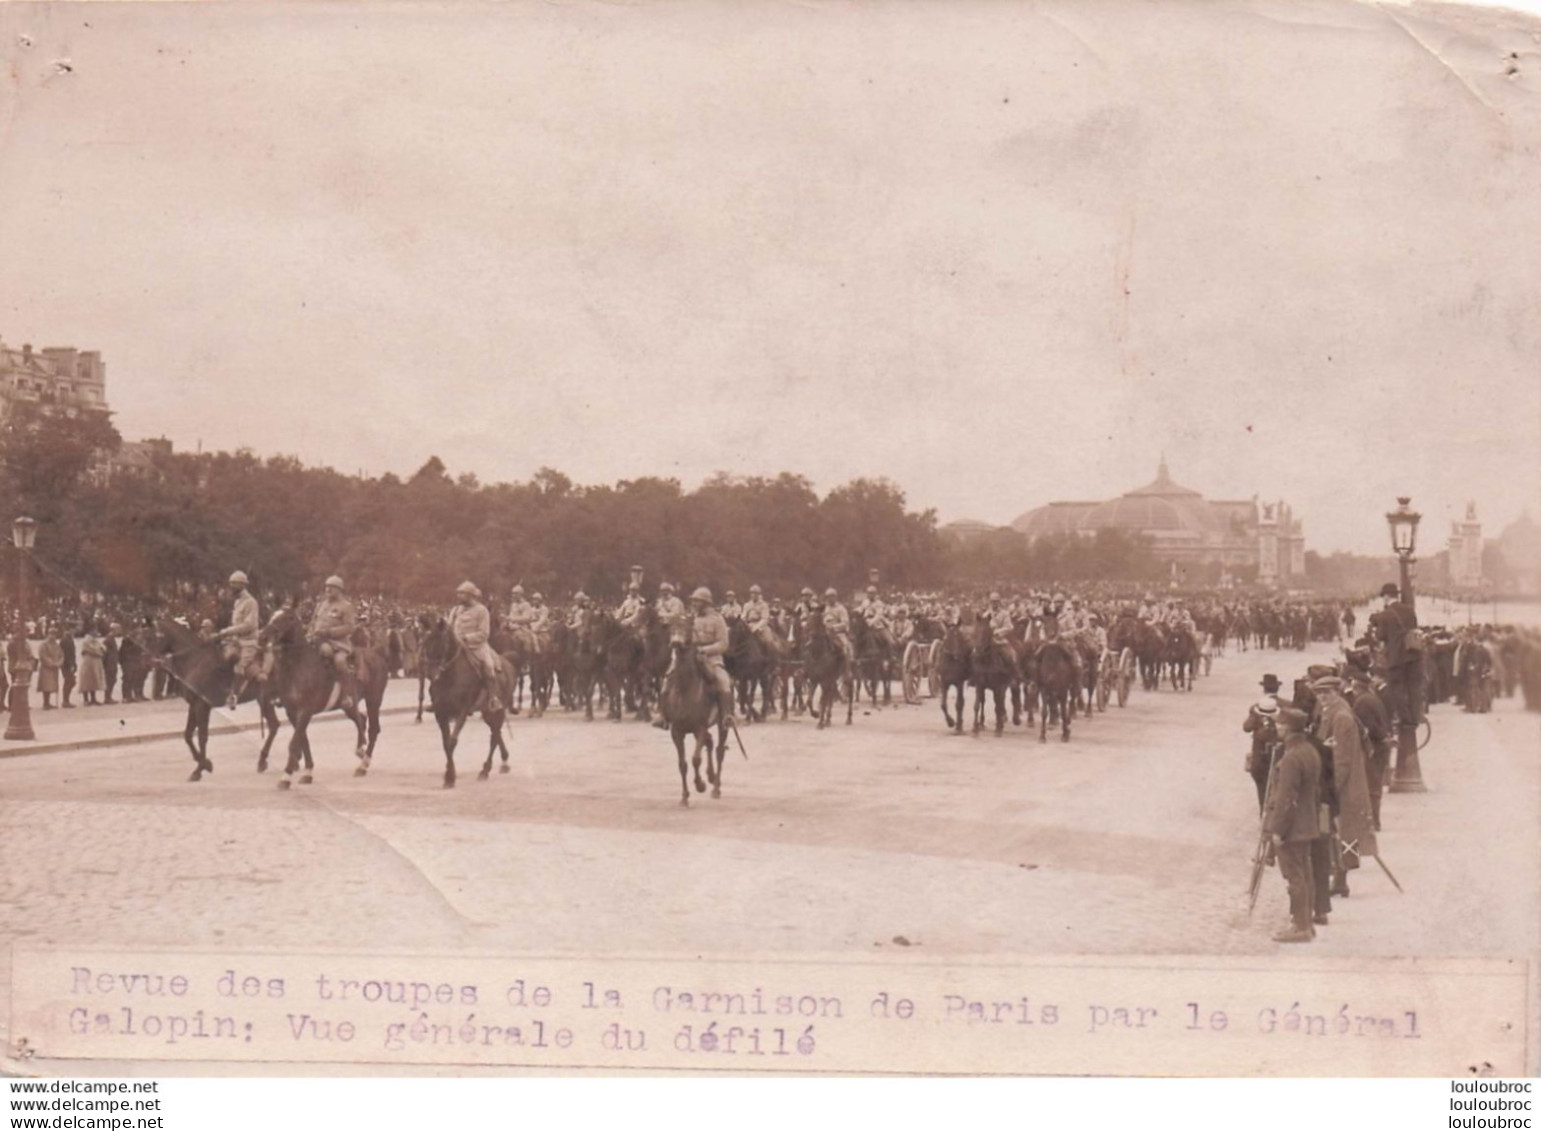 REVUE DES TROUPES DE LA GARNISON DE PARIS PAR LE GENERAL GALOPIN WW1  1916  PHOTO DE  PRESSE 16X12CM - Guerre, Militaire